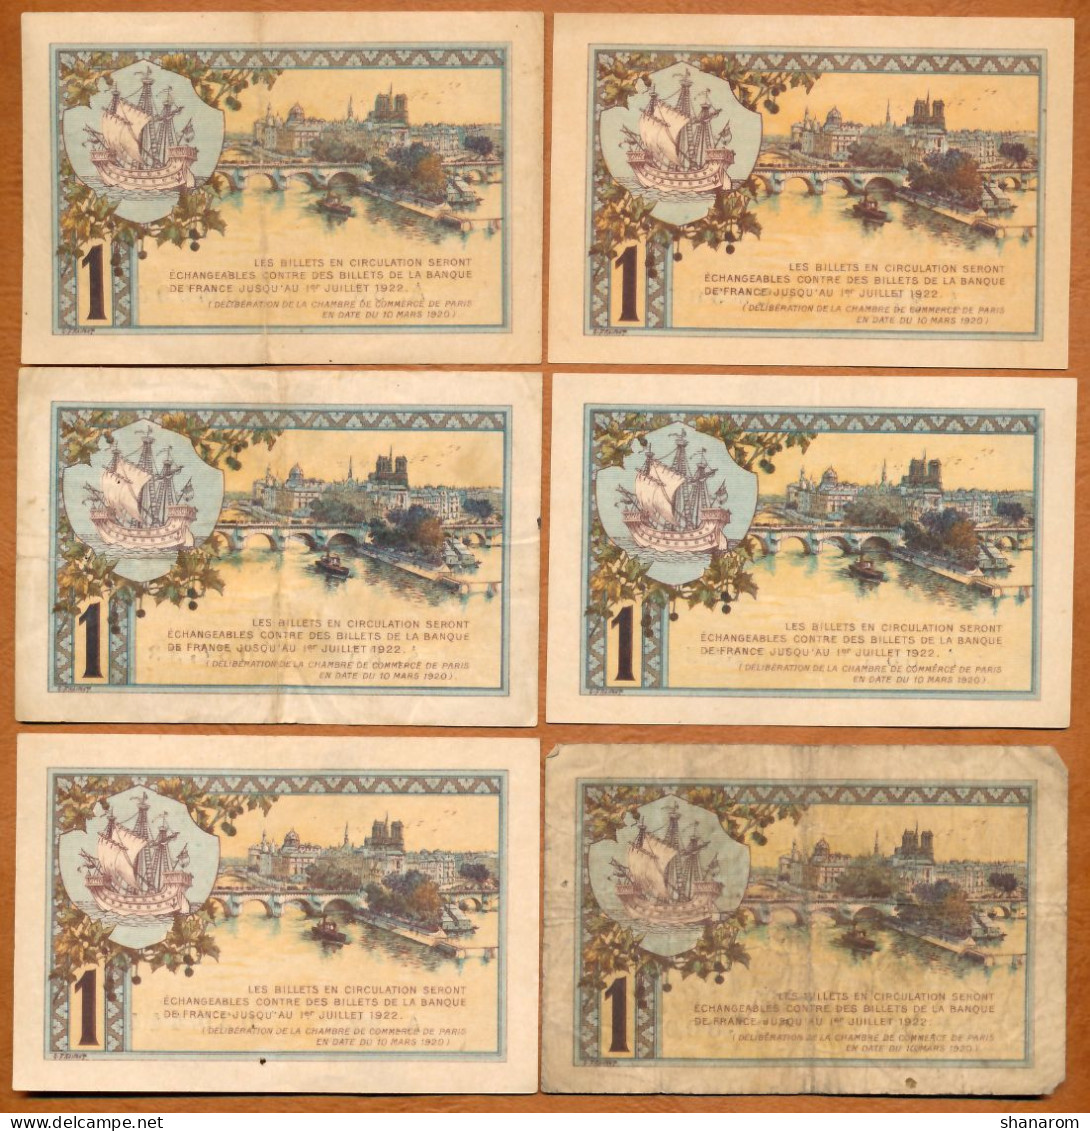 1914-20 // C.D.C. // PARIS (75) // Mars 1920 // 38 Billets // Séries Différentes // Un Franc